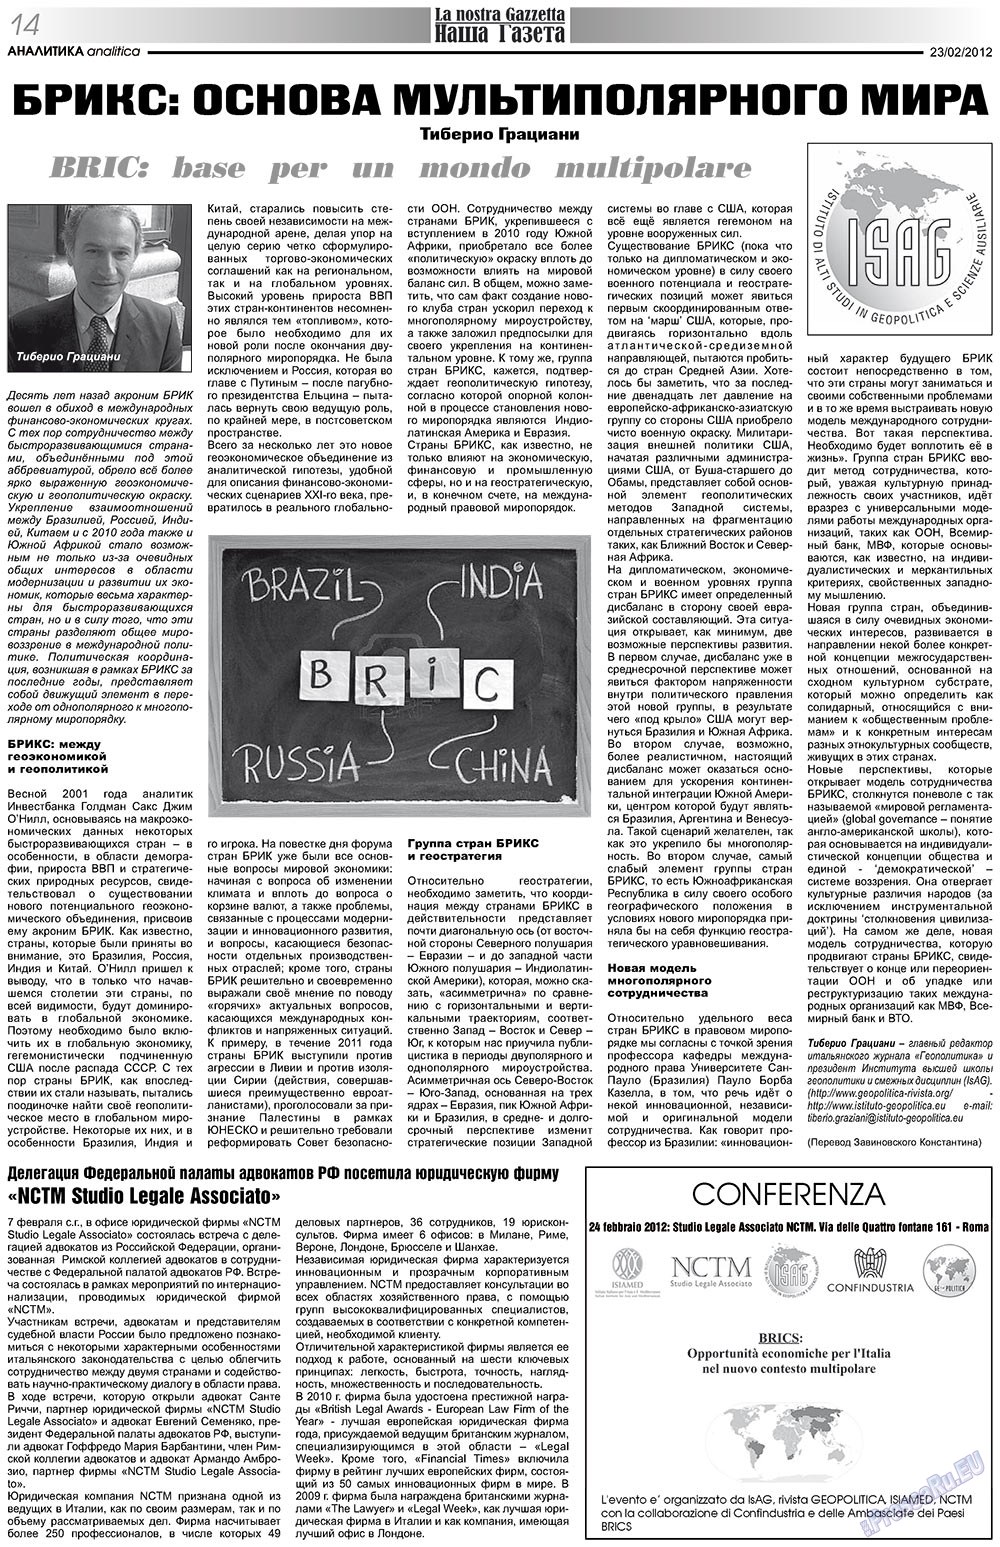 Наша Газета Италия, газета. 2012 №151 стр.14